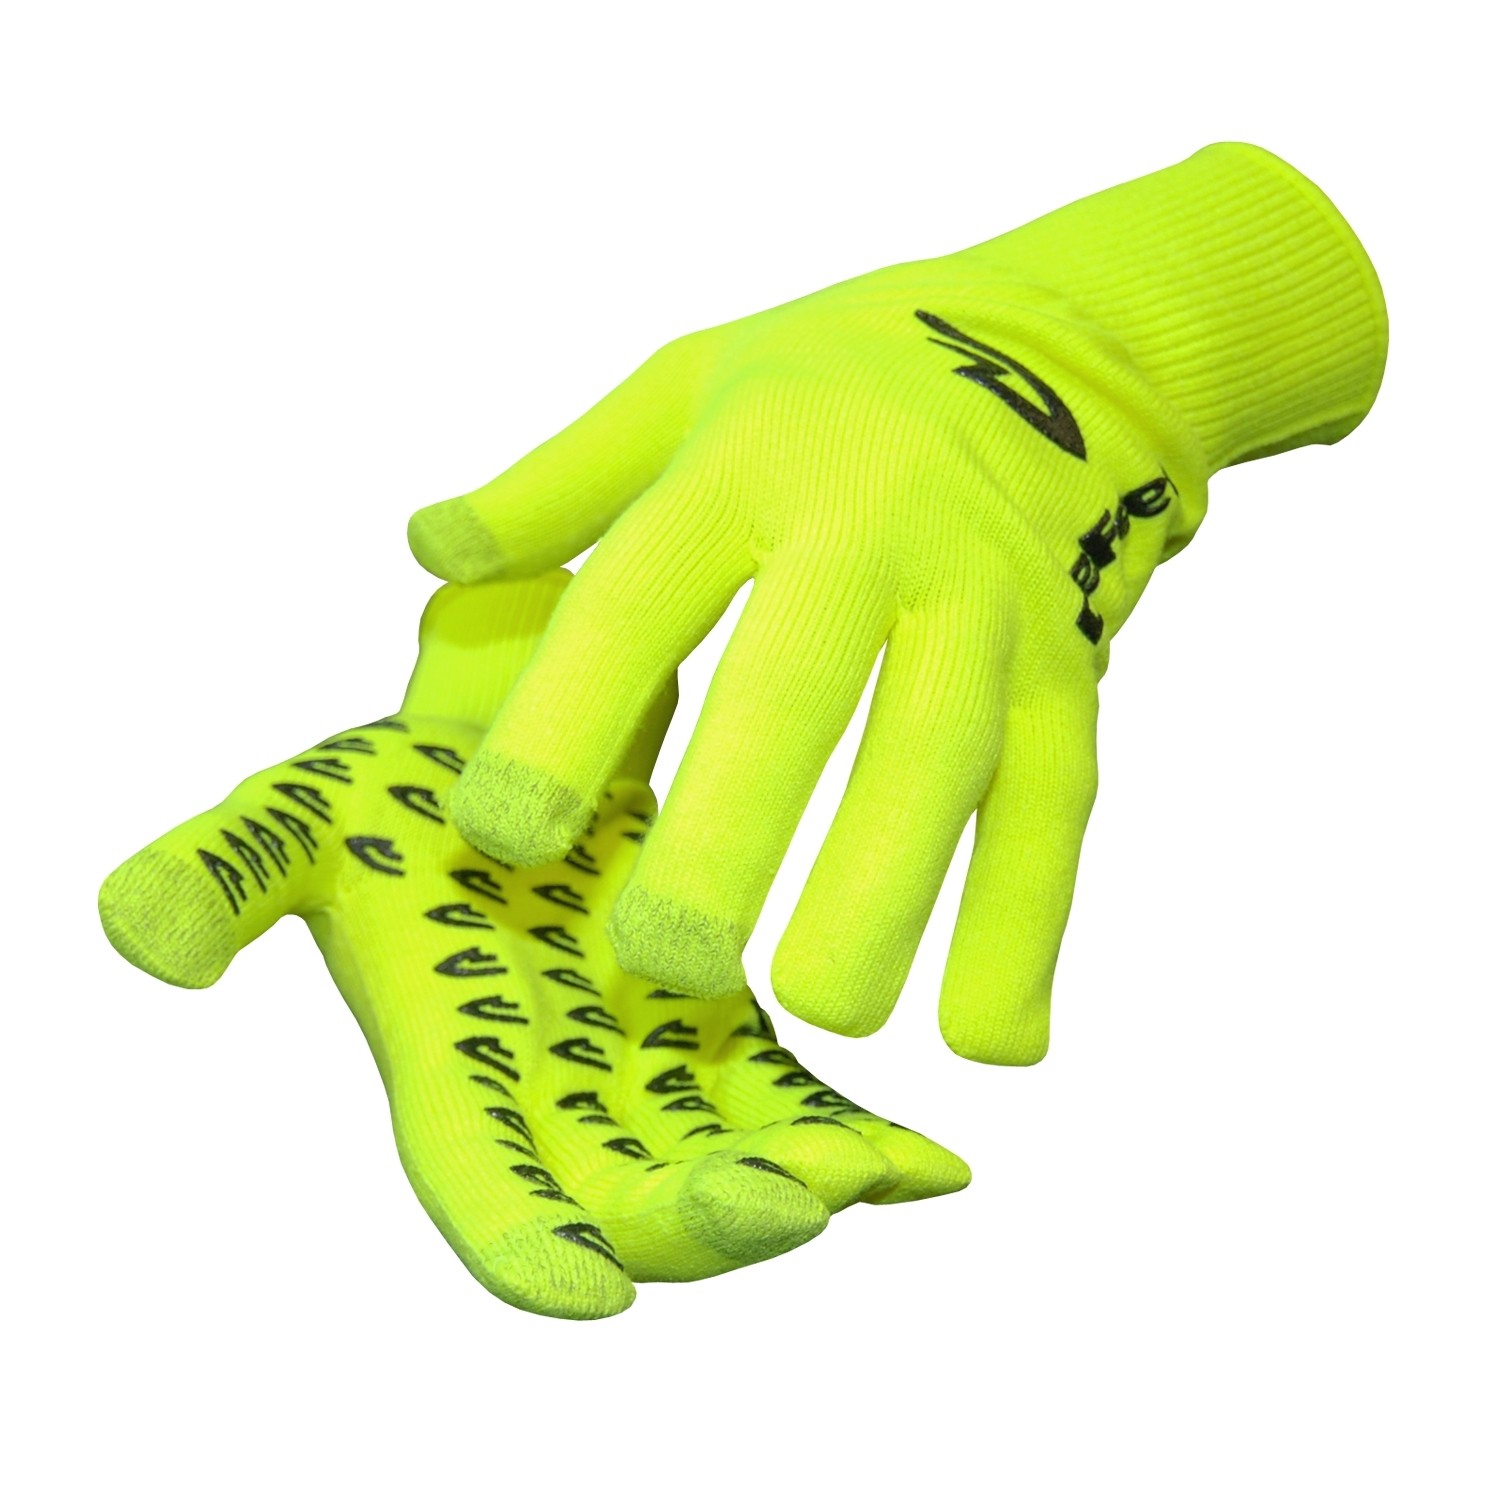 Defeet e-touch dura handschoen geel